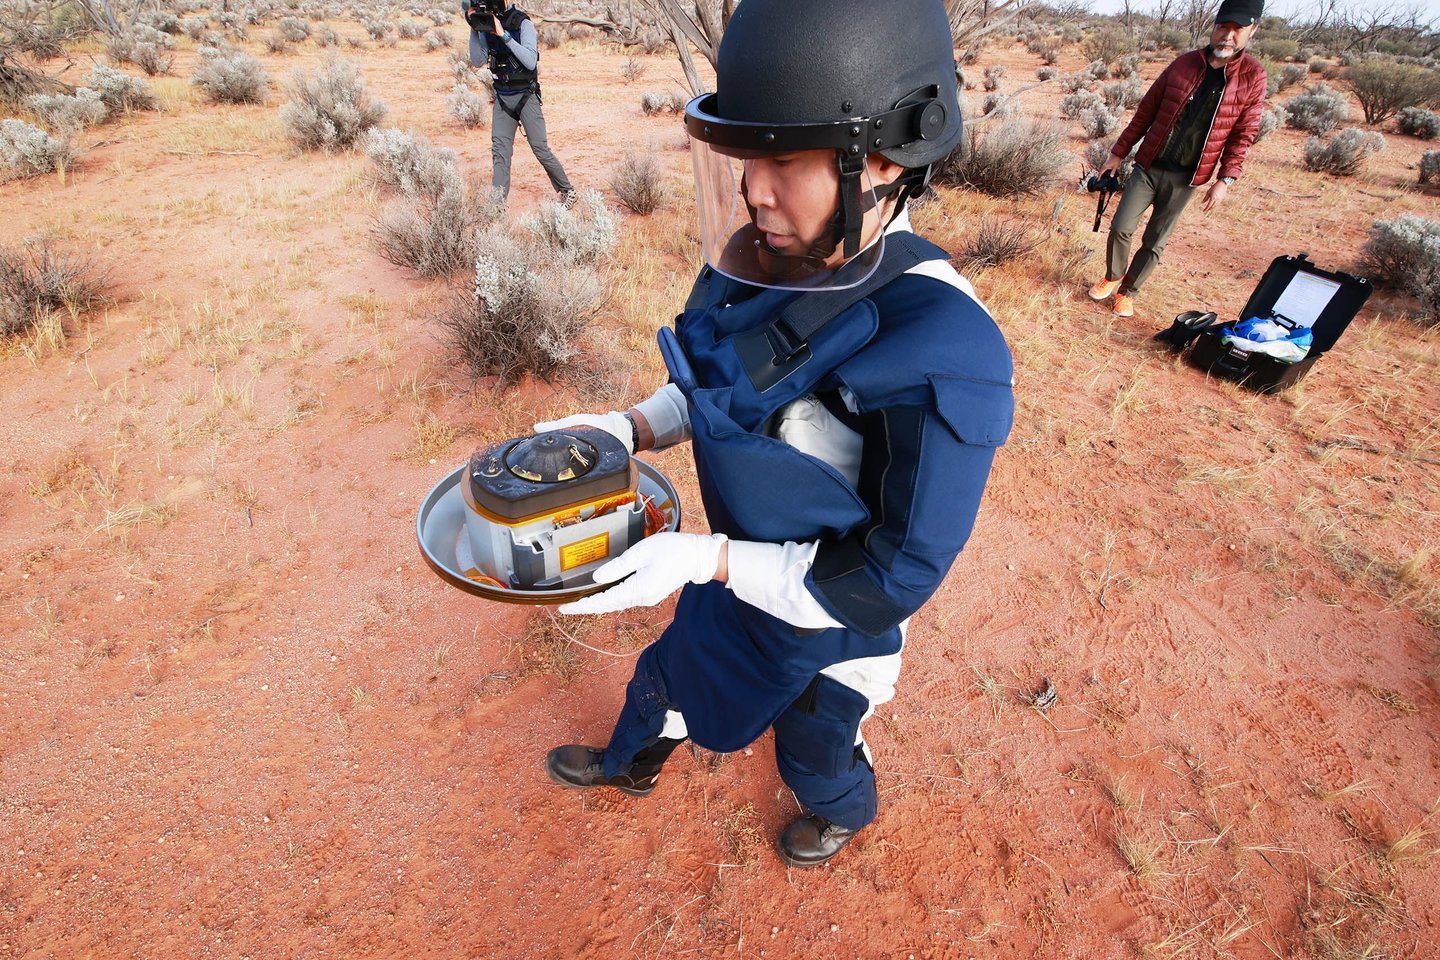  Šeštadienio vakarą konteineris su kosminės uolos – asteorido Ryugu – mėginiais parašiutu nusileido netoli Vumeros (Australija).